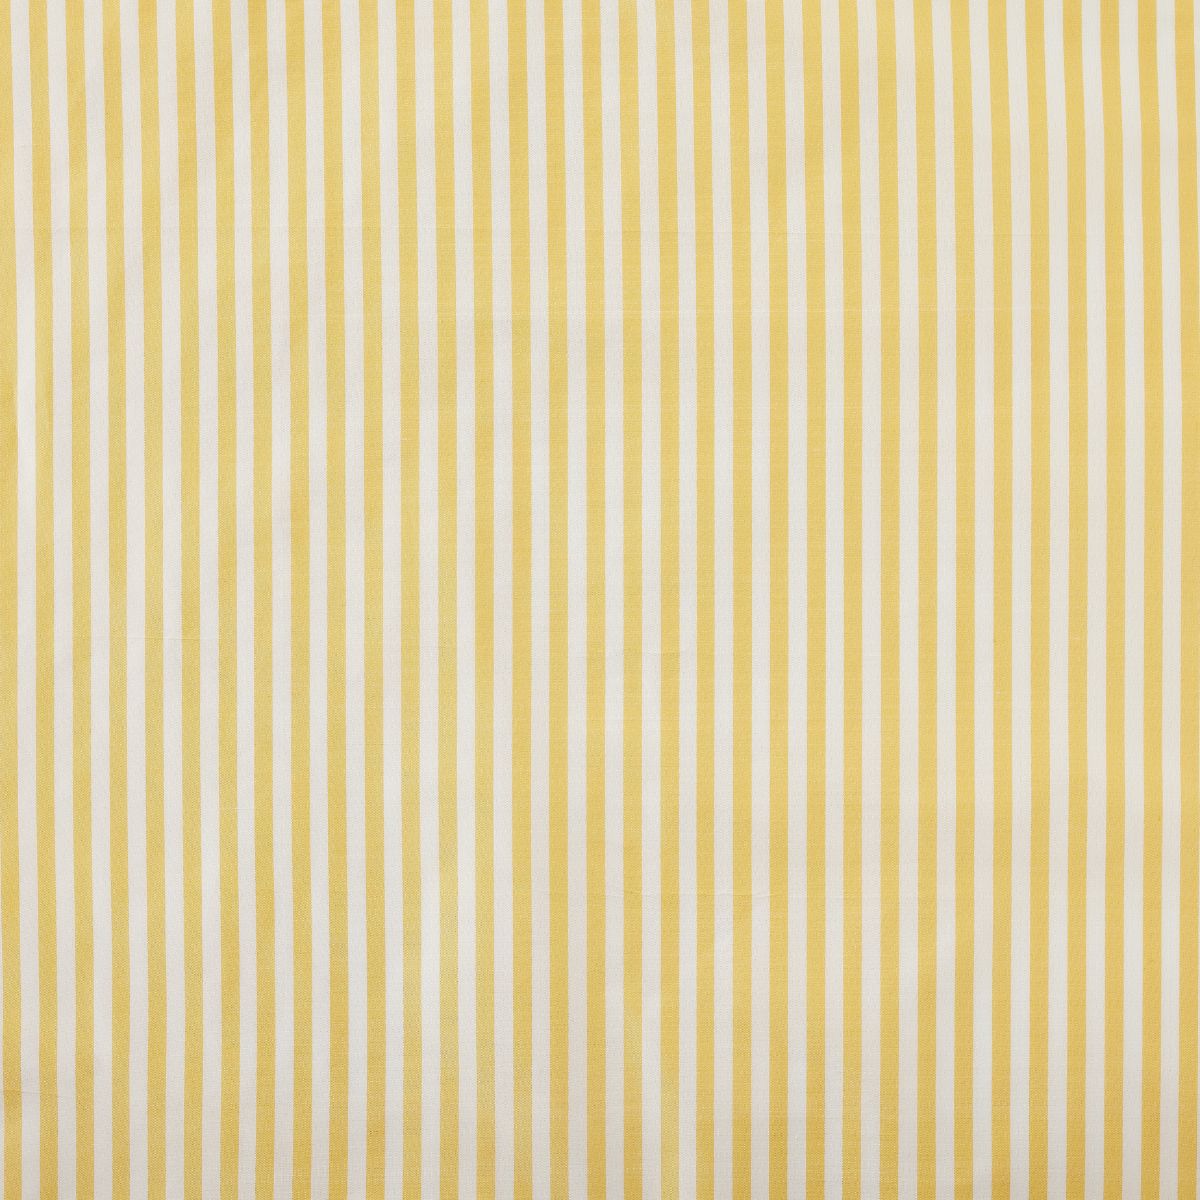 Noelle Stripe Fabric in Lemon